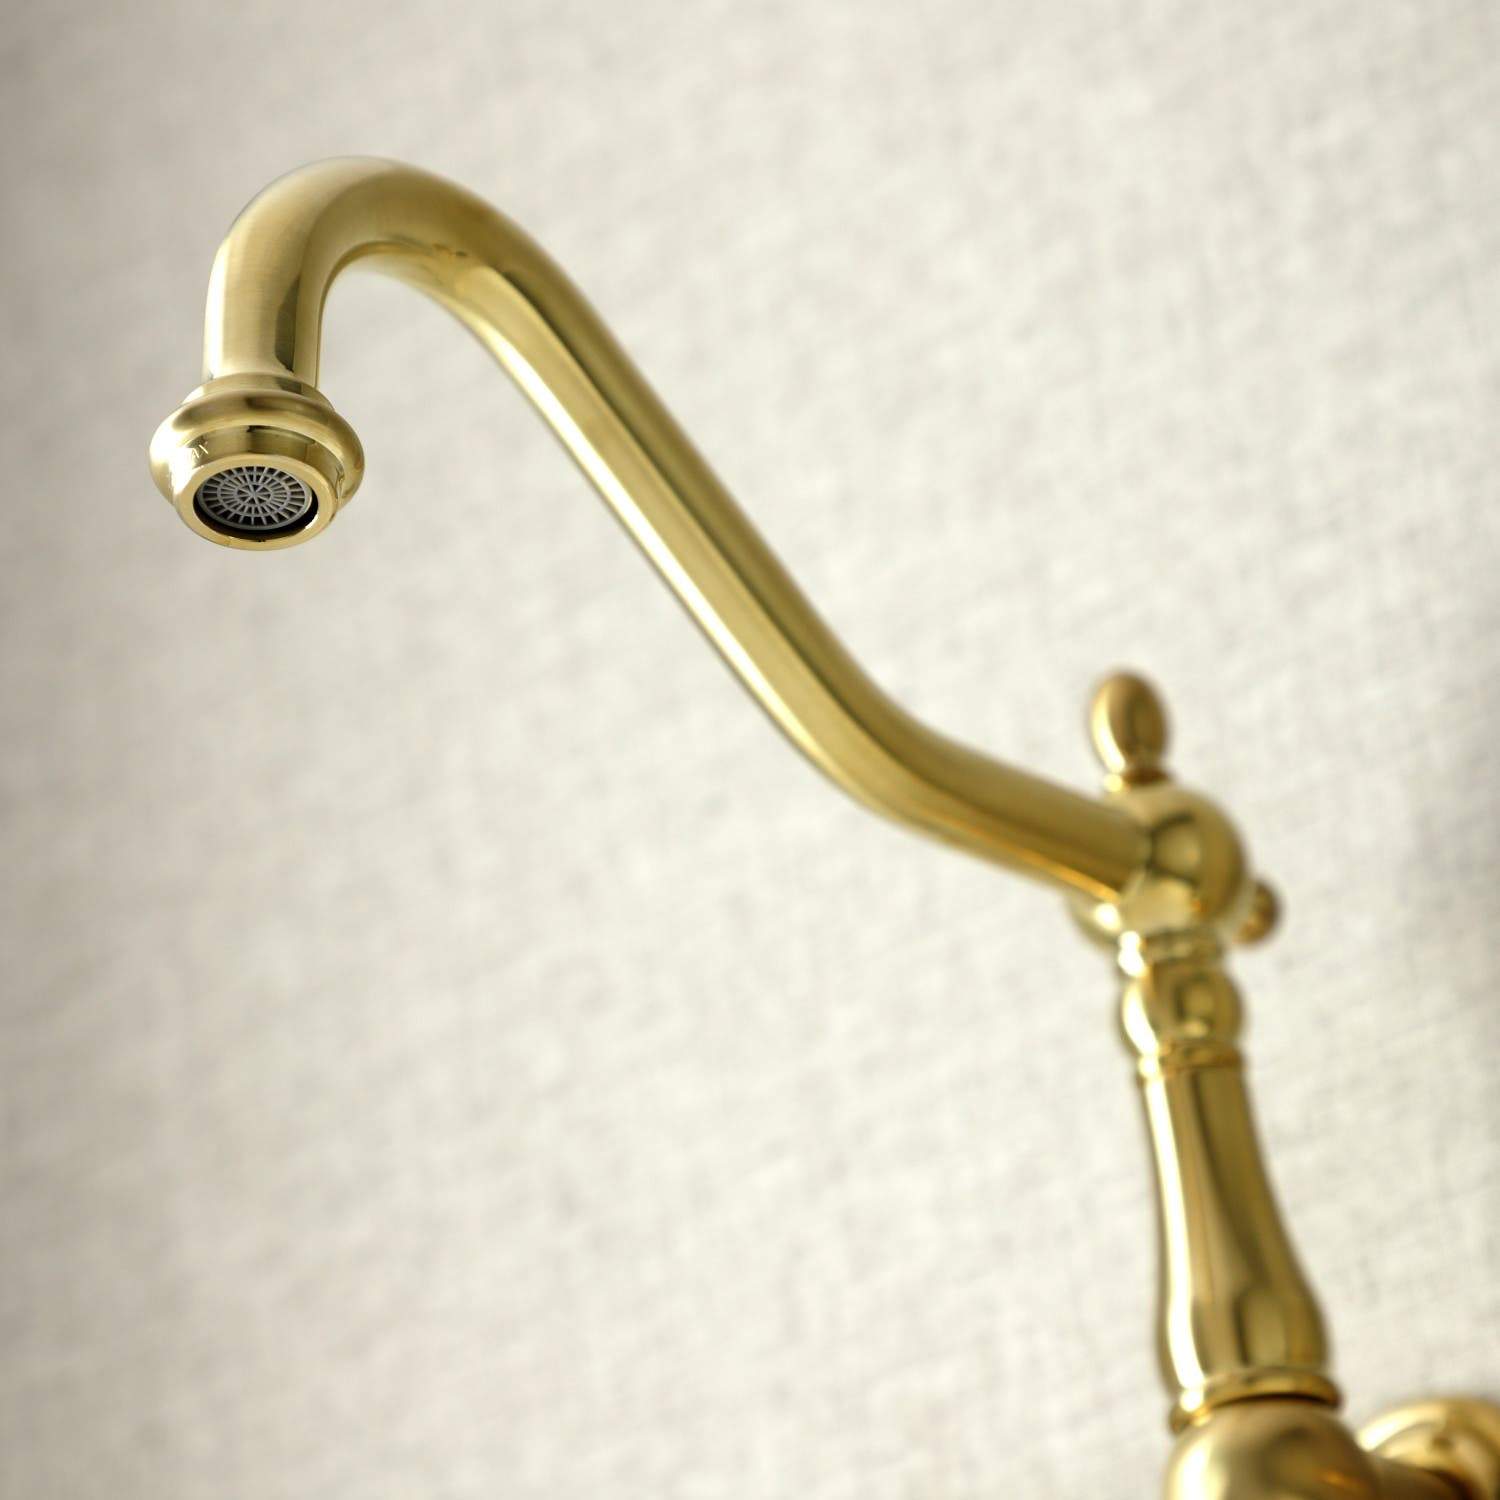 Kingston Brass KS128XPKL-P Duchess Wall Mount Kitchen Faucet